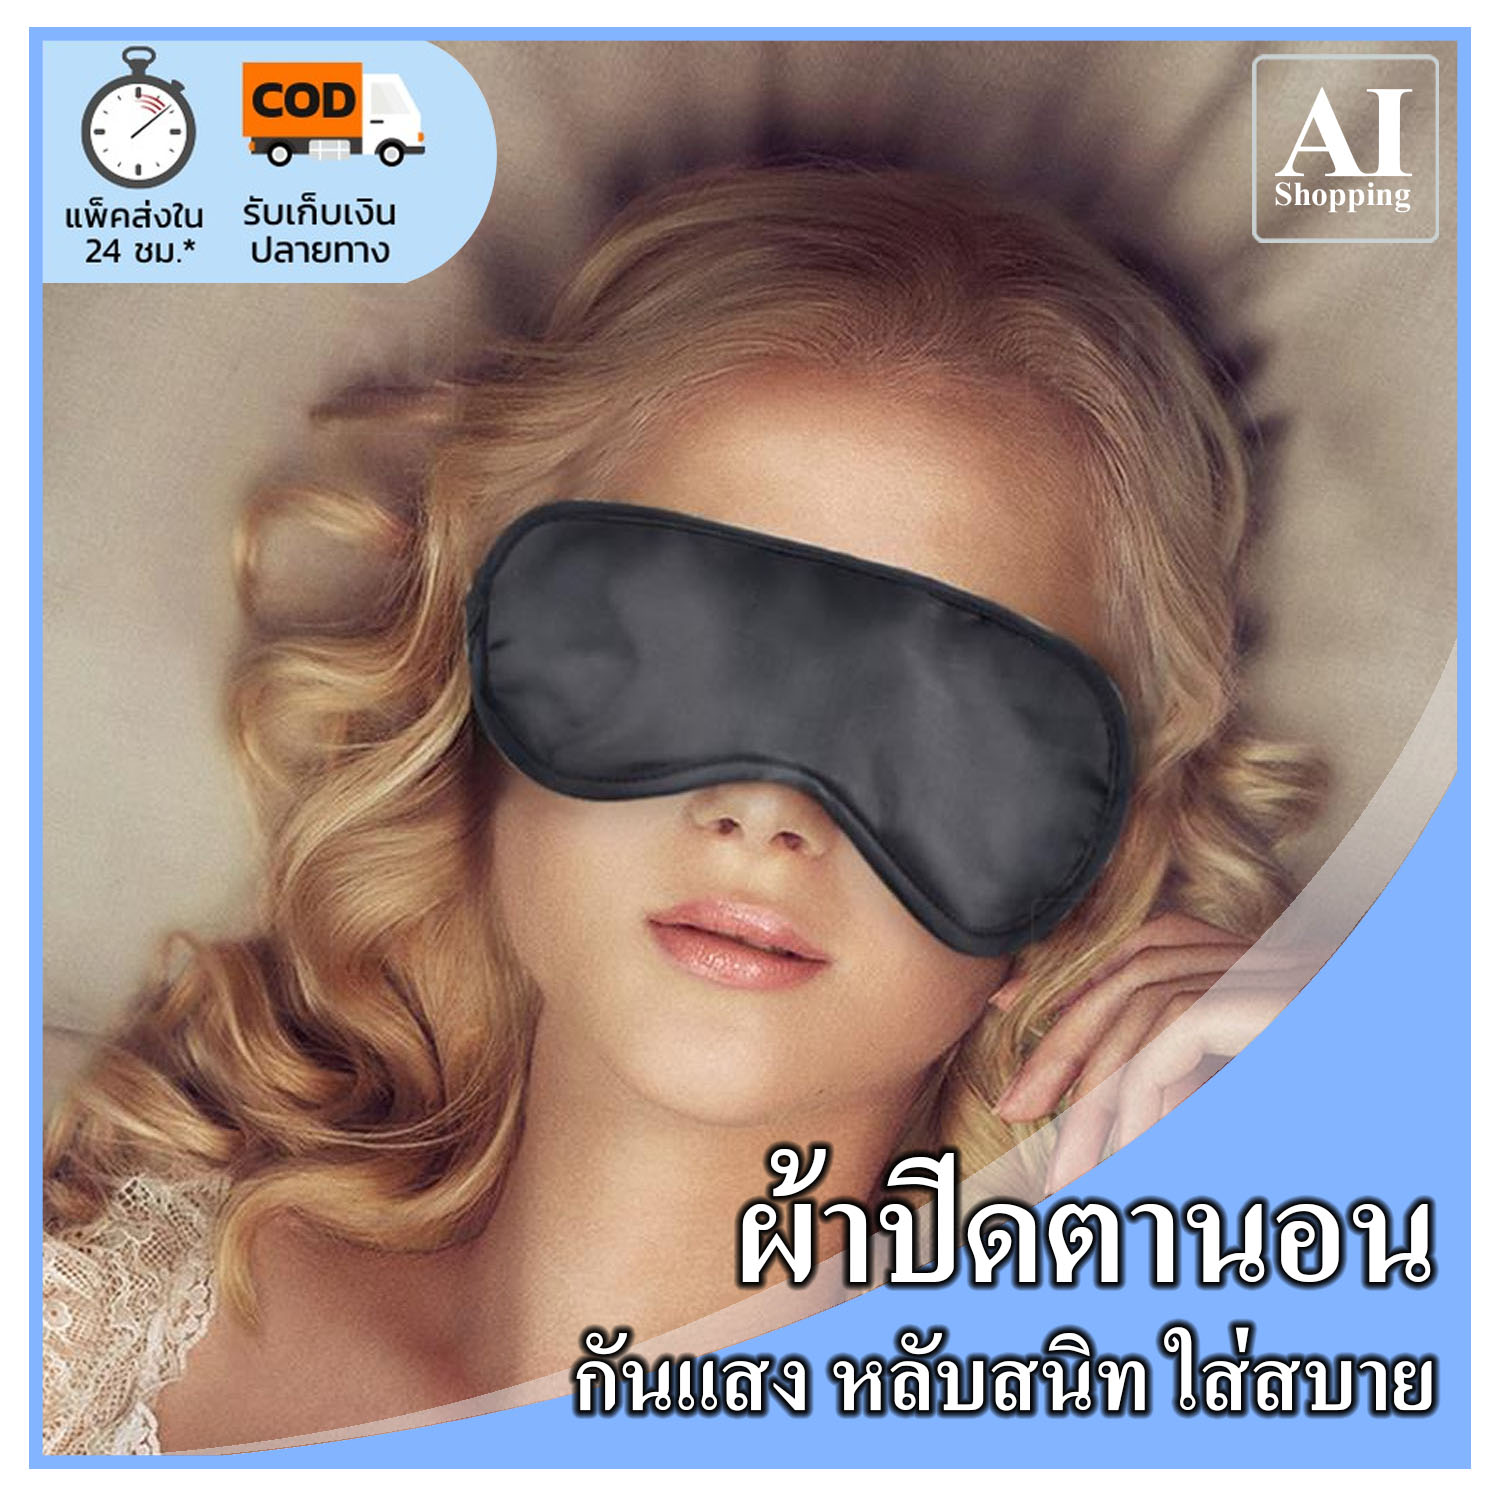 AI Shop 1 ชิ้น ผ้าปิดตา สีดำ กันแสง ผ้า ปิดตานอน ที่ปิดตา เดินทาง ท่องเที่ยว เดินป่า นุ่ม หลับสบาย หลับสนิท ใส่สบาย เบา พร้อมส่ง จากไทย